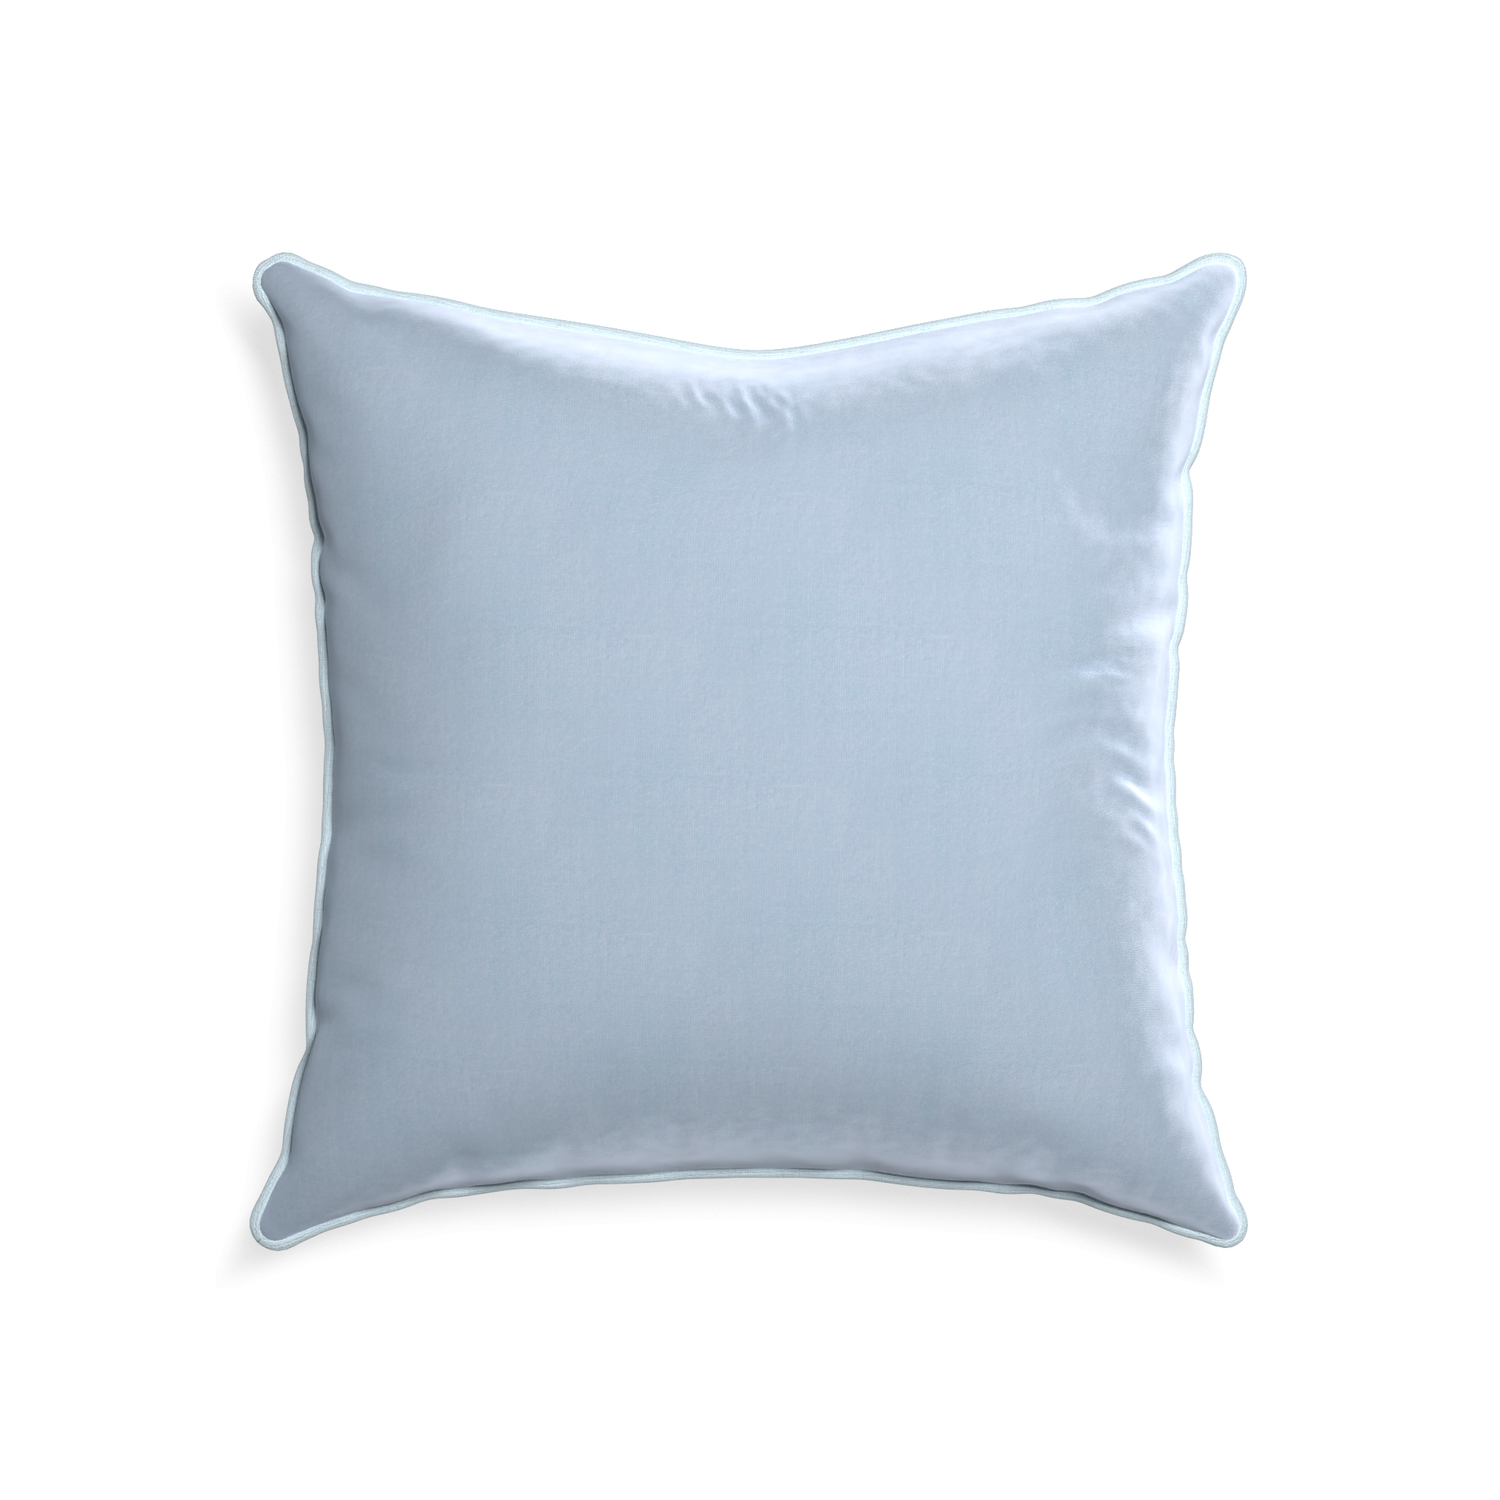 square light blue velvet pillow with light blue piping